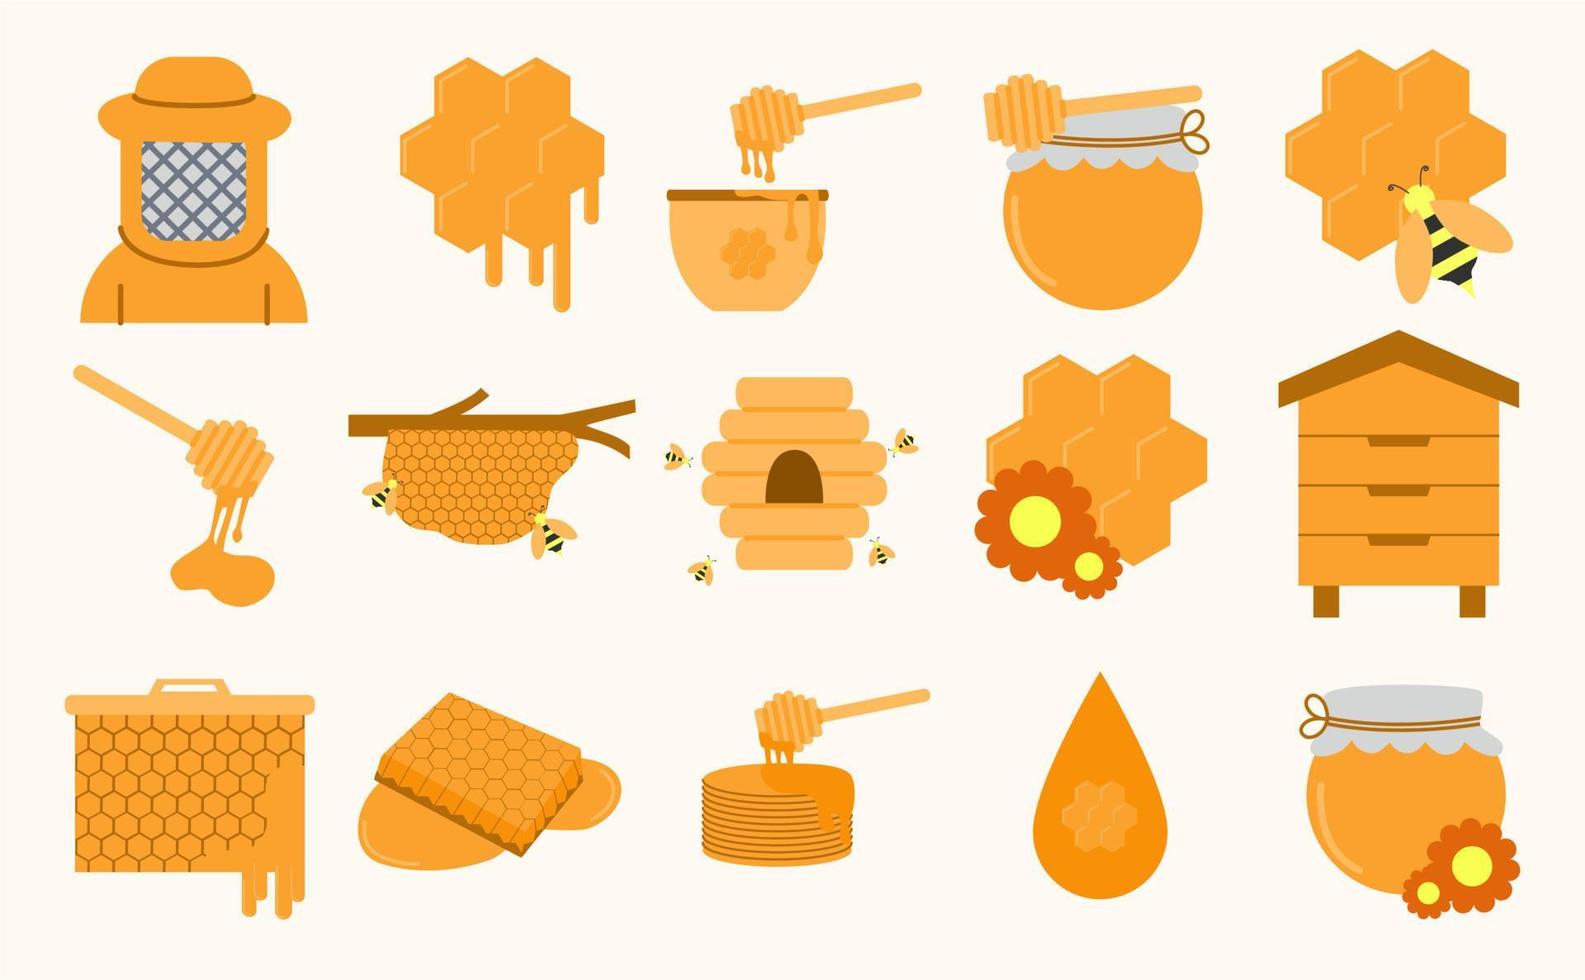 Honig- und Bienensymbole gesetzt. sammlung flacher symbole wie honig, biene, bienenstock, wabe, bienenwachs, imker, bienennest, honiglöffel und andere vektor